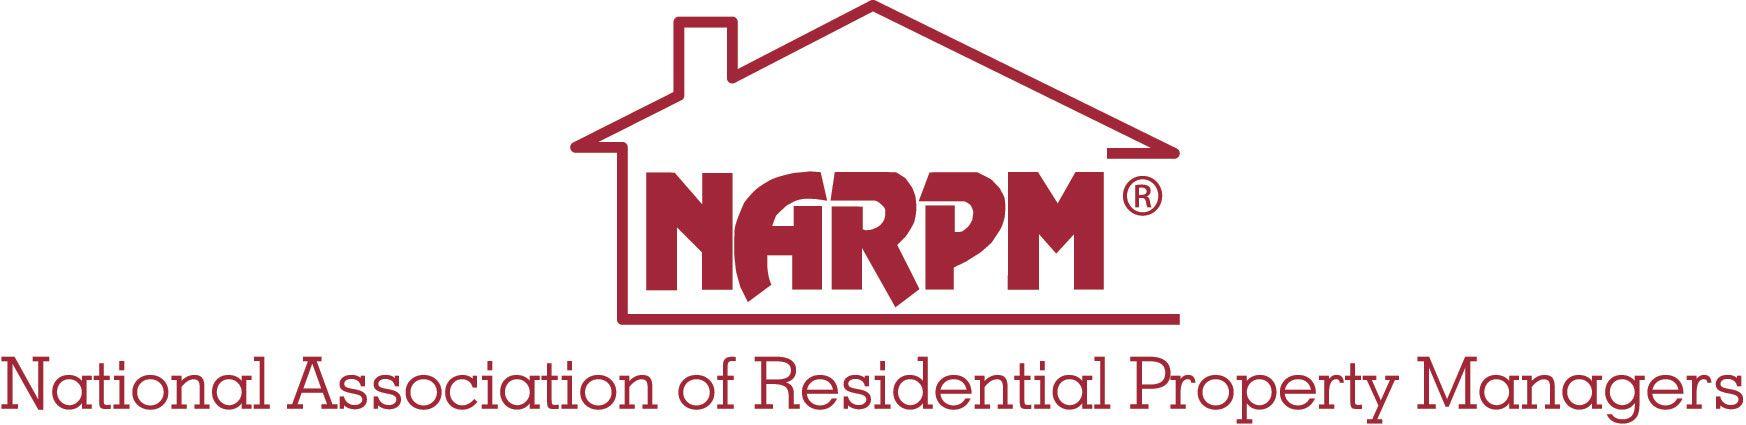 Narpm Logo - Why Use a NARPM® Member? : www.WhyUseOne.com